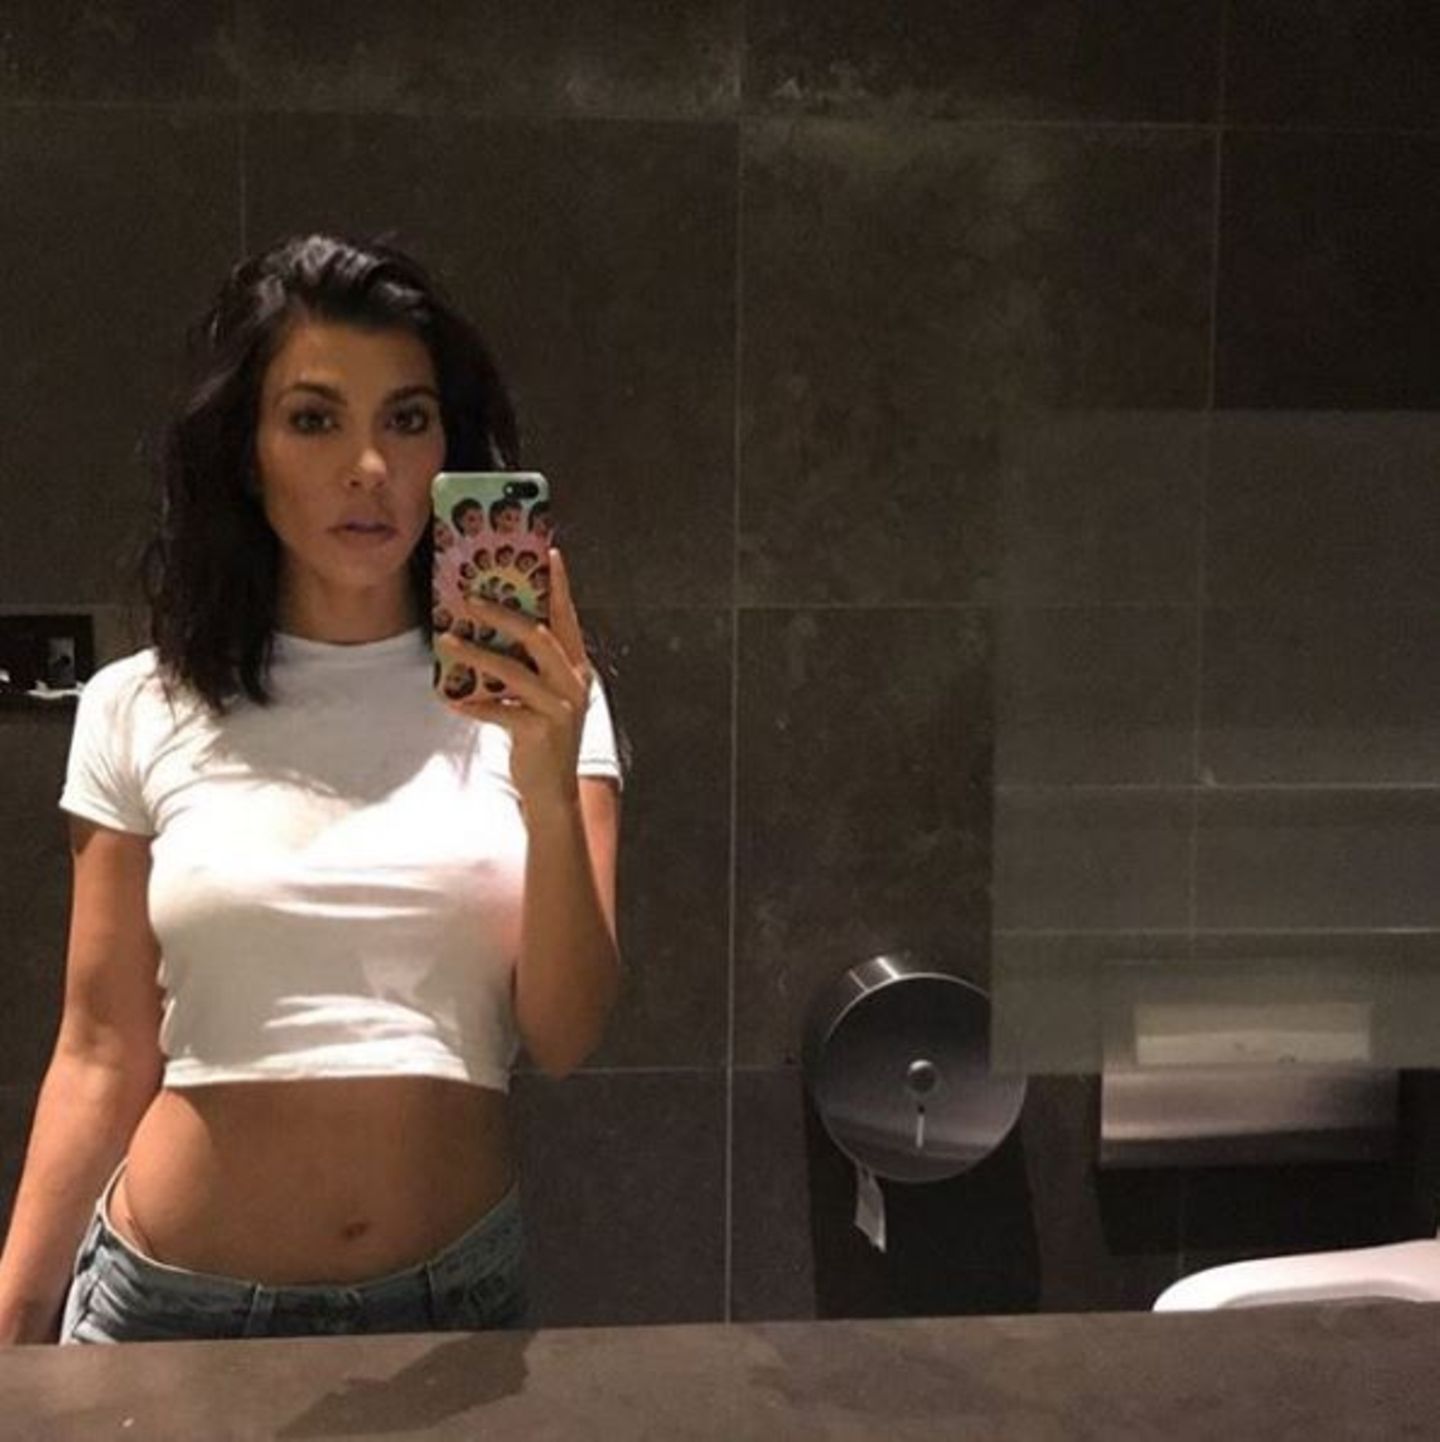 Eigentlich möchte Kourtney Kardashian mit diesem Spiegel-Selfie ihren neuen Haarschnitt präsentieren. Dass sie keinen BH trägt, lenkt allerdings etwas von ihrem Bob ab.